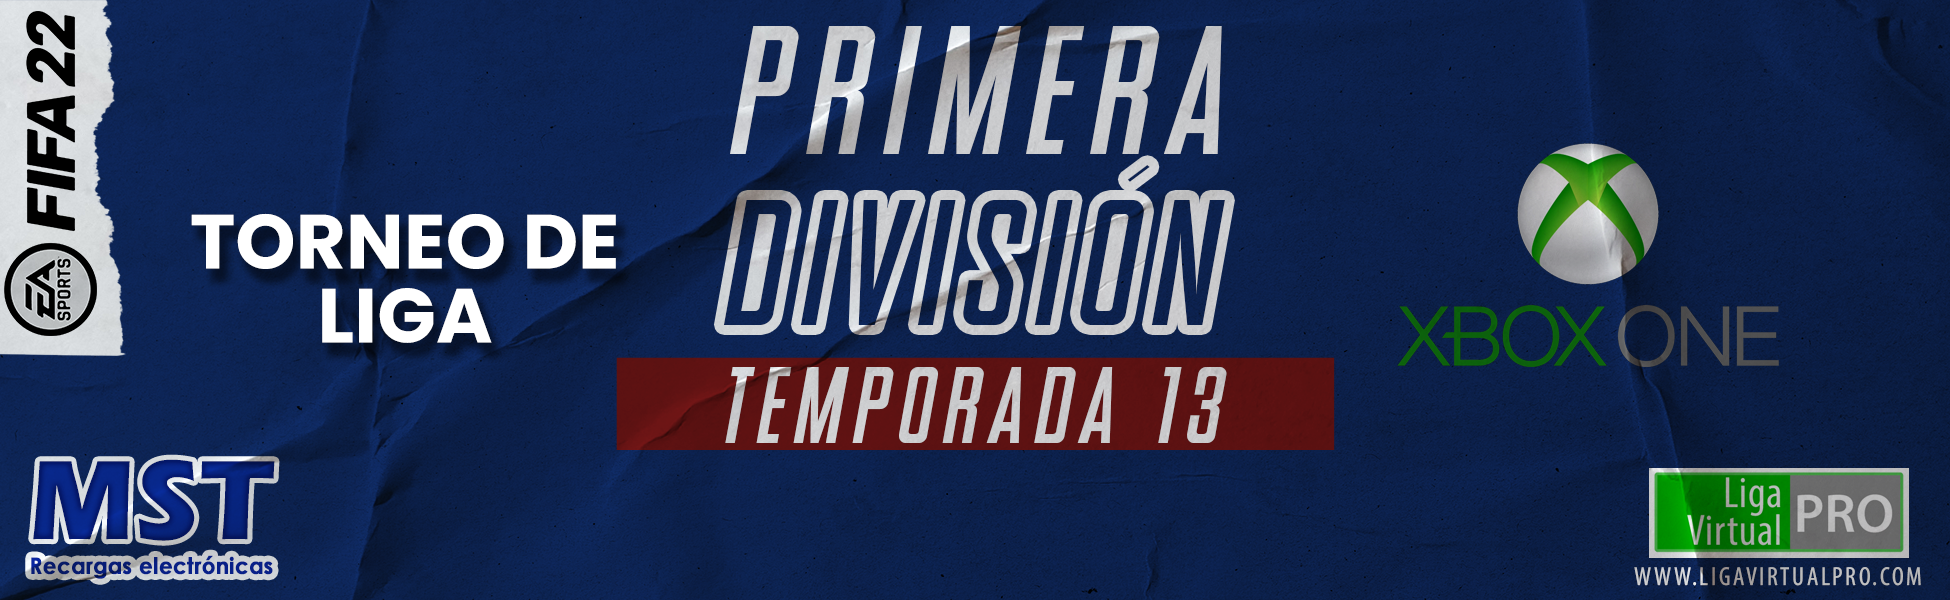 PRIMERA DIVISIÓN XBOX ONE - TEMPORADA 13 .png